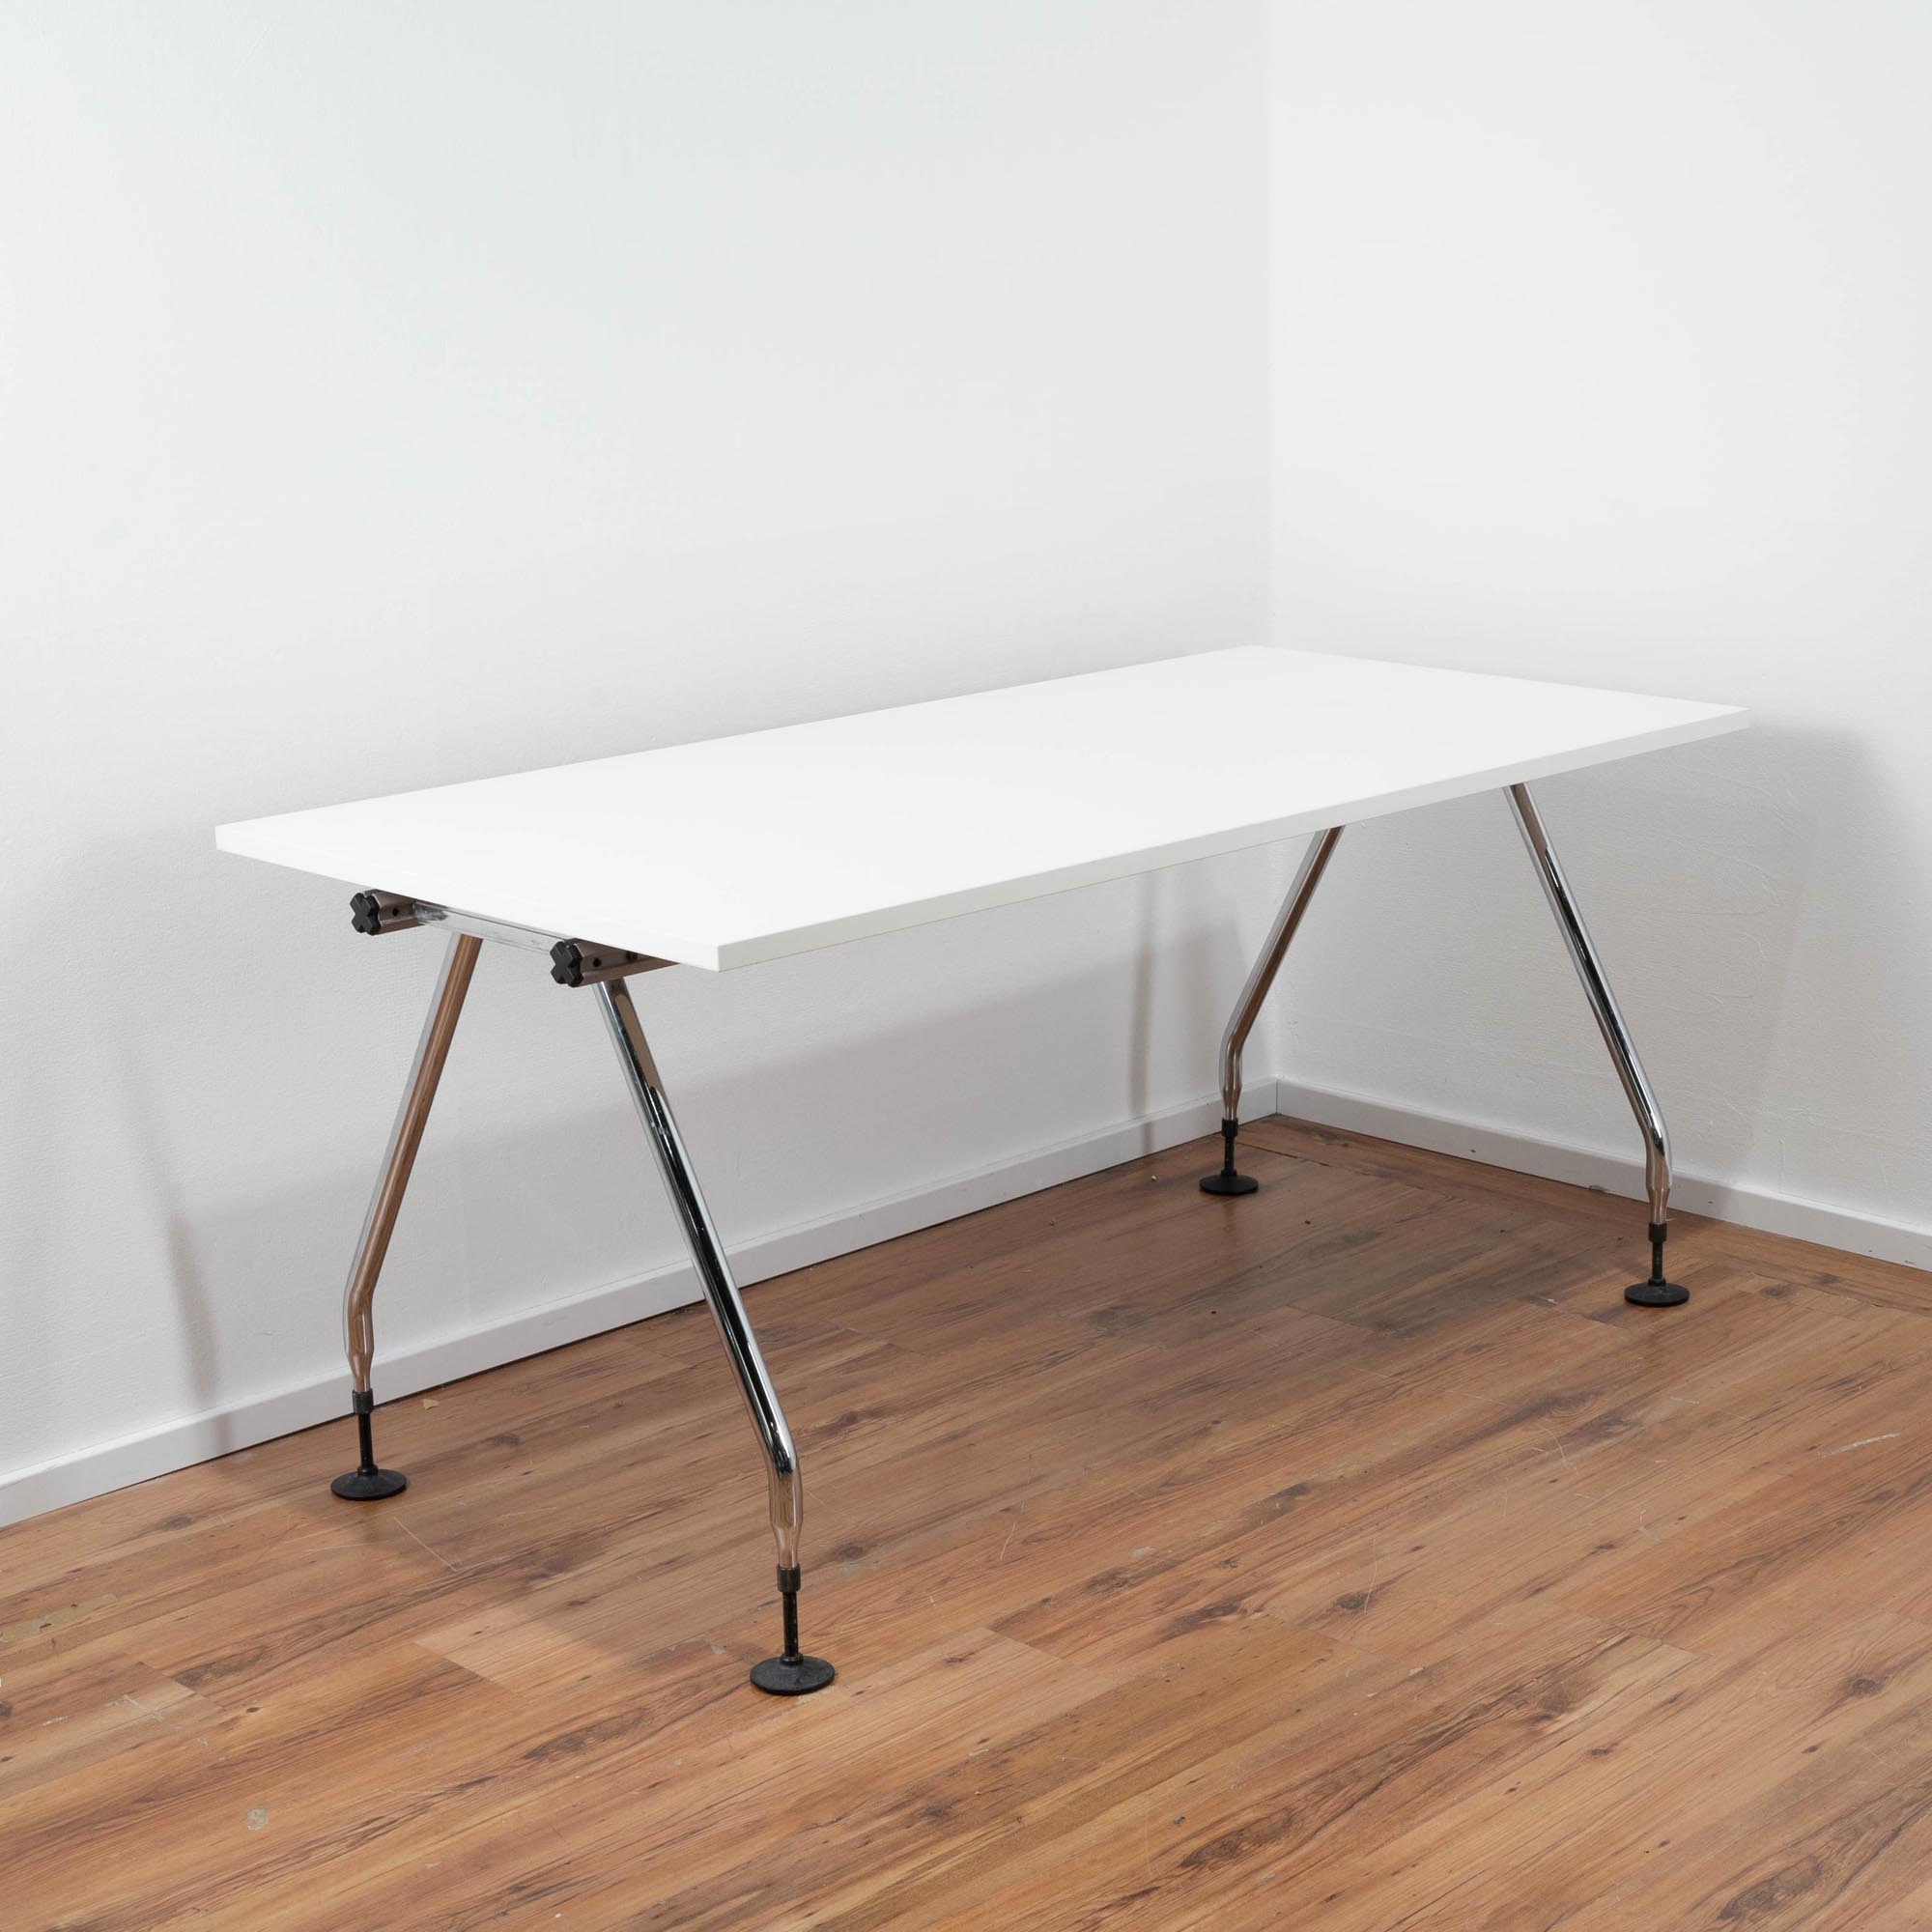 Vitra Schreibtisch - Platte weiß - 4-Fuß Gestell - höhenverstellbar an den Füßen